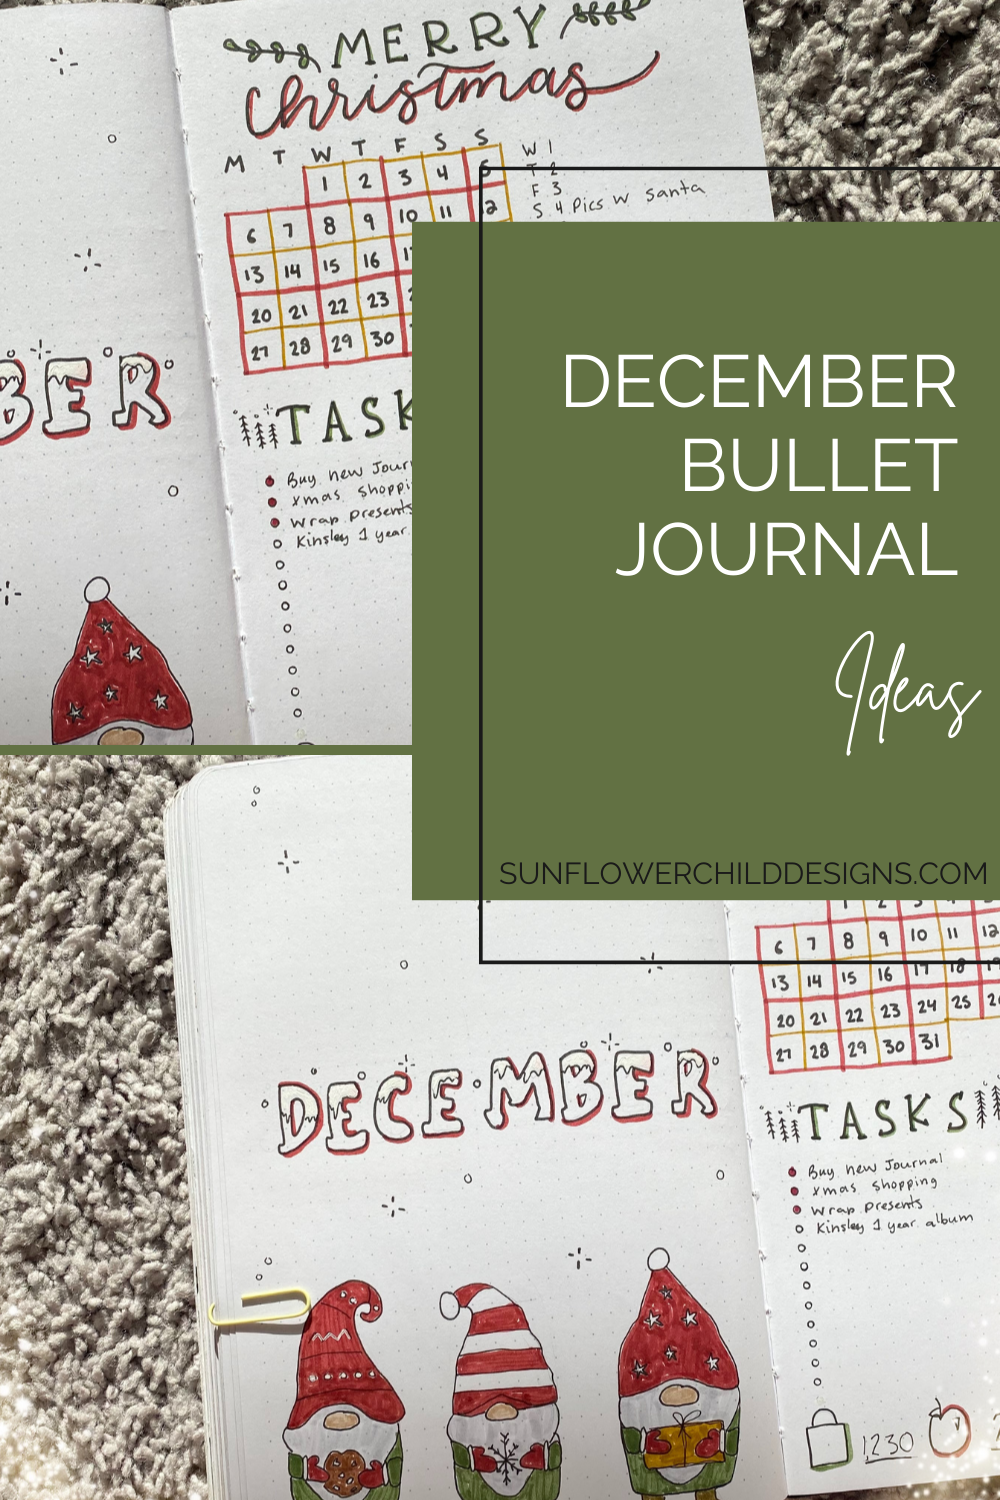 December-bullet-journal-ideas-13.png